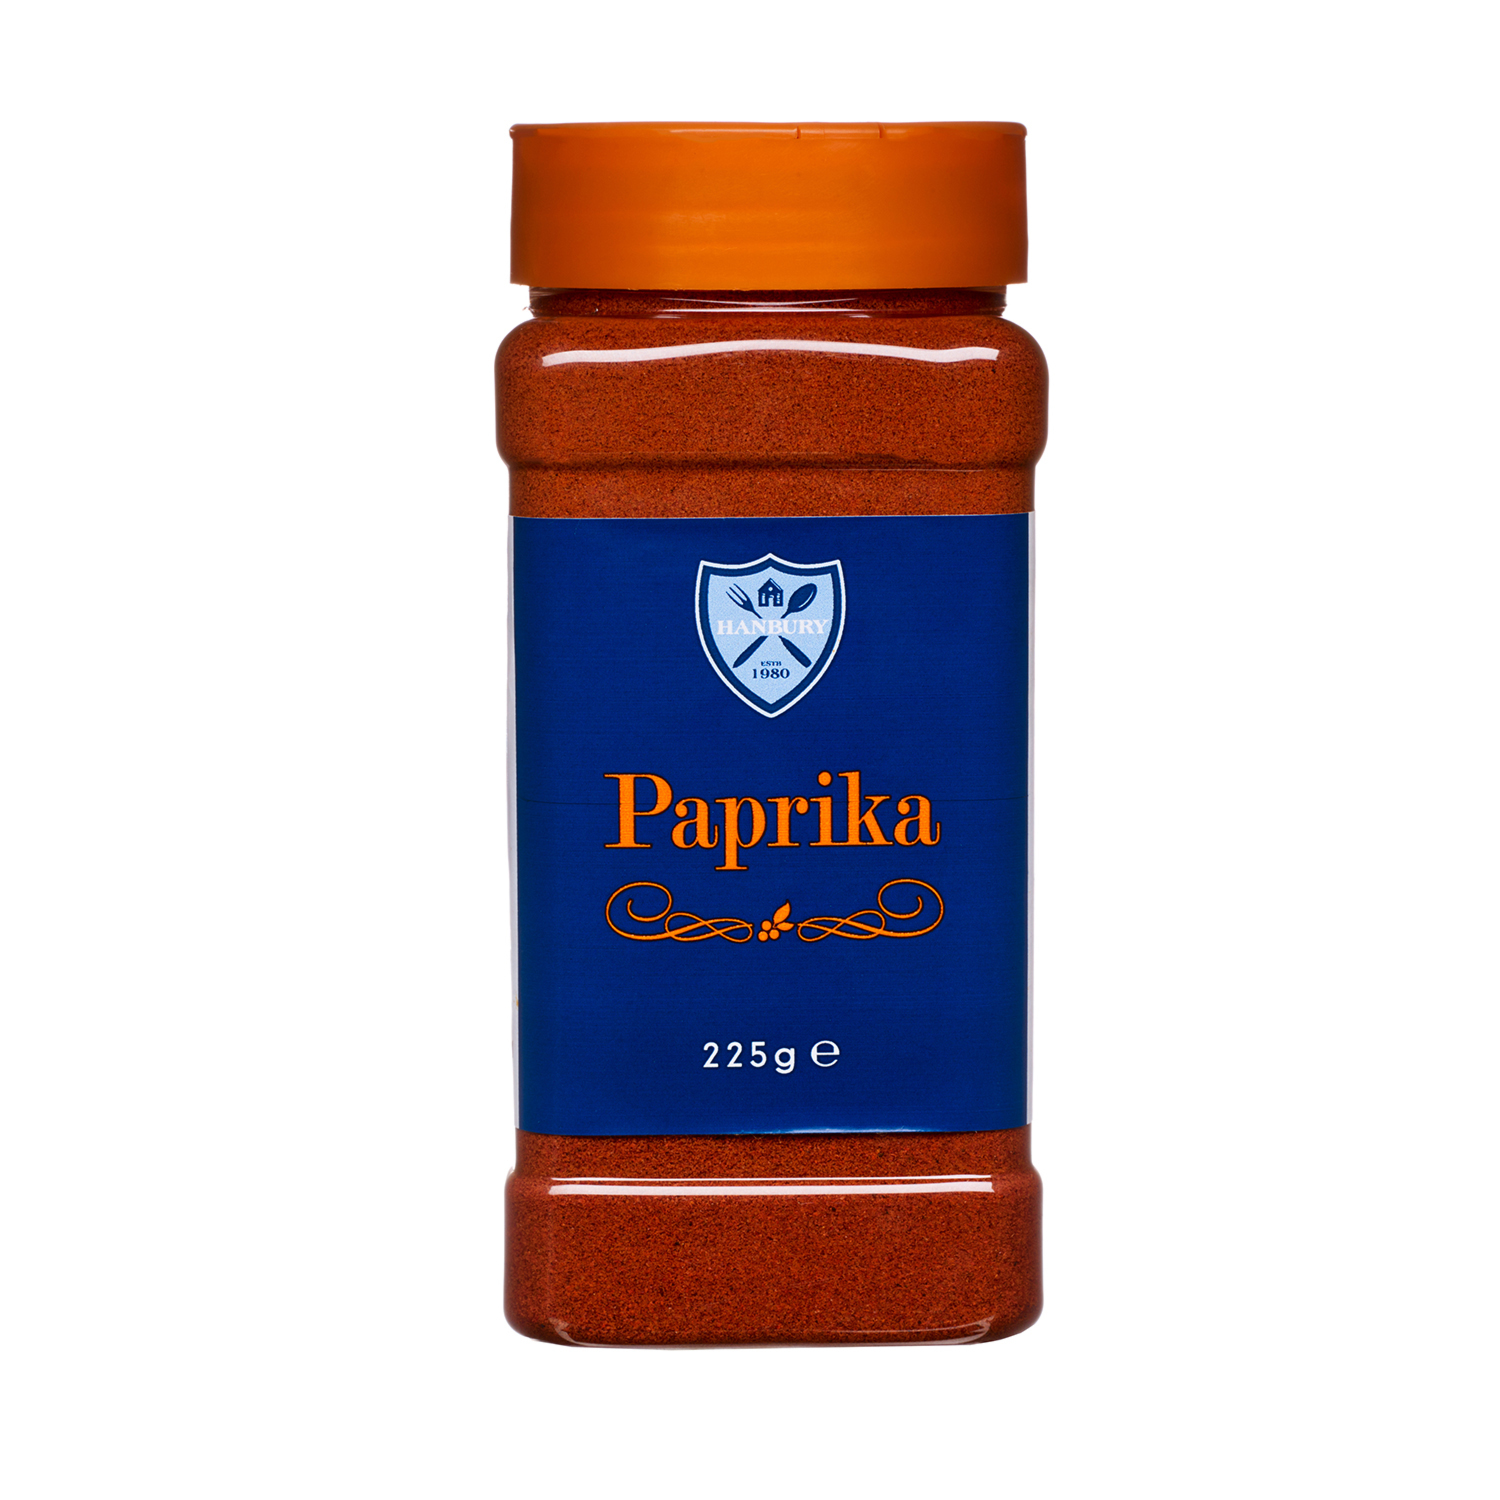 Paprika Image